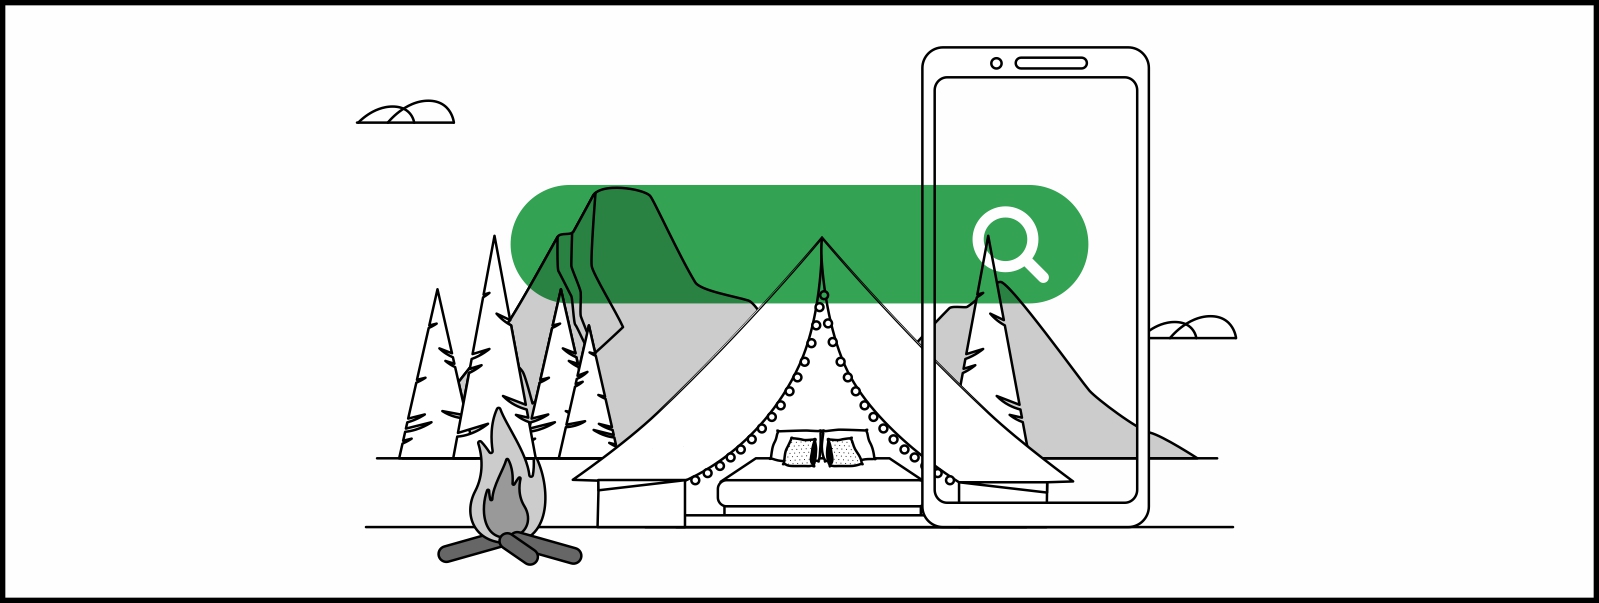 Una carpa de lujo con una fogata alrededor. Detrás, un bosque y montañas. Delante, una pantalla de un dispositivo móvil y una barra de Buscador en verde.